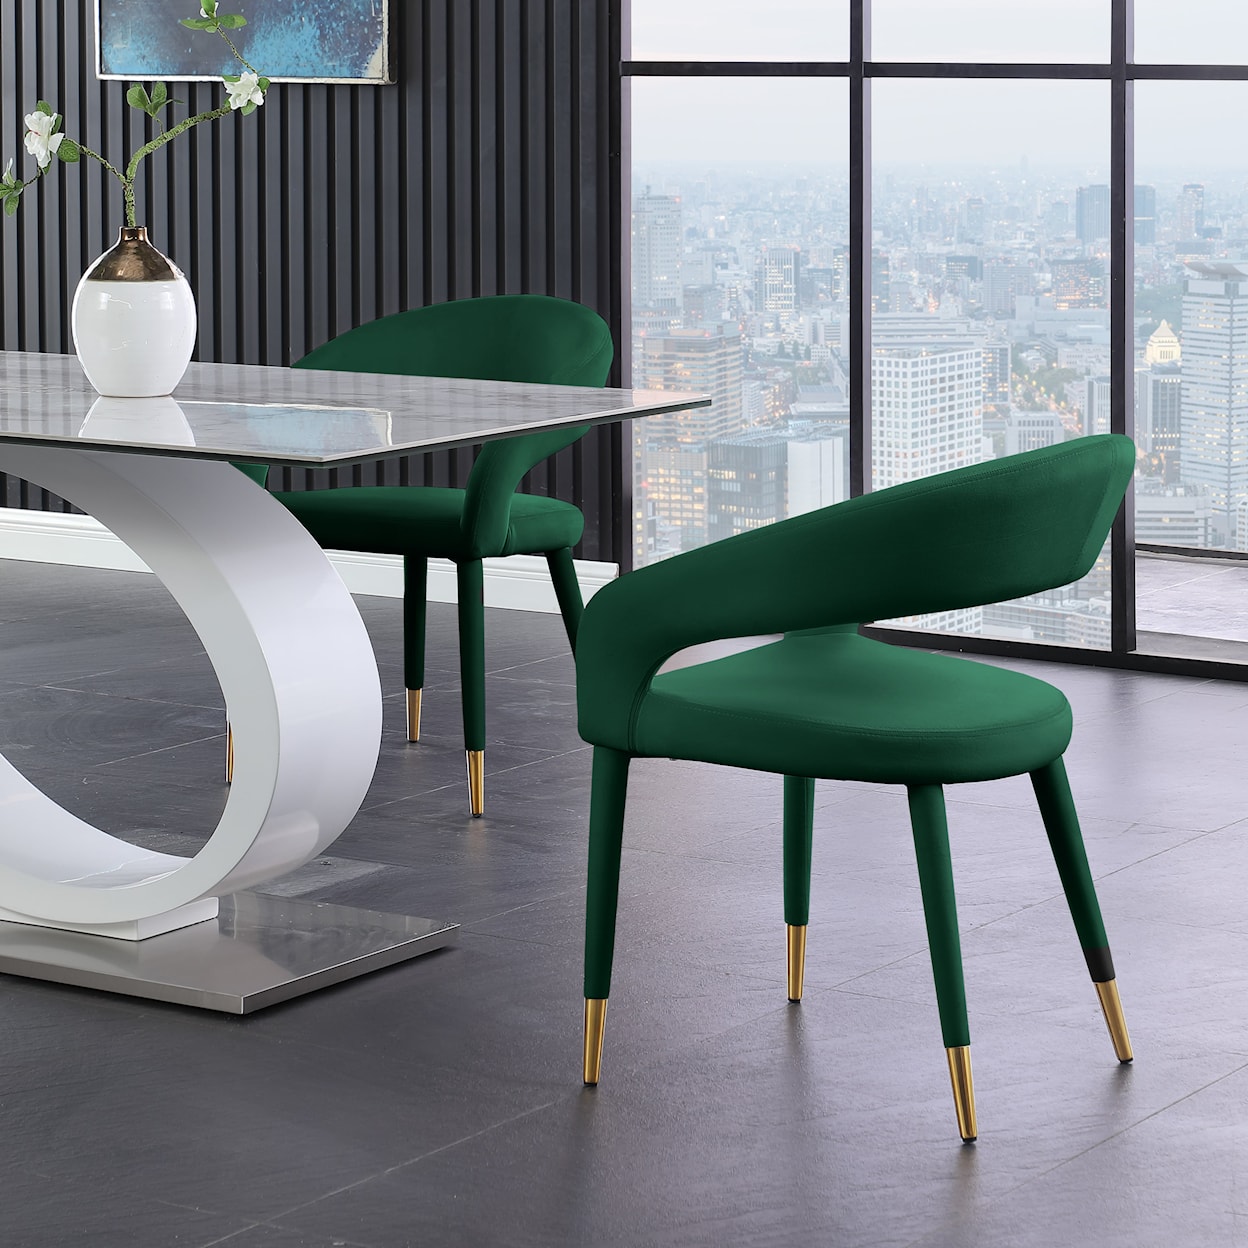 Meridian Furniture Destiny Upholstered Green Velvet Dining Chair